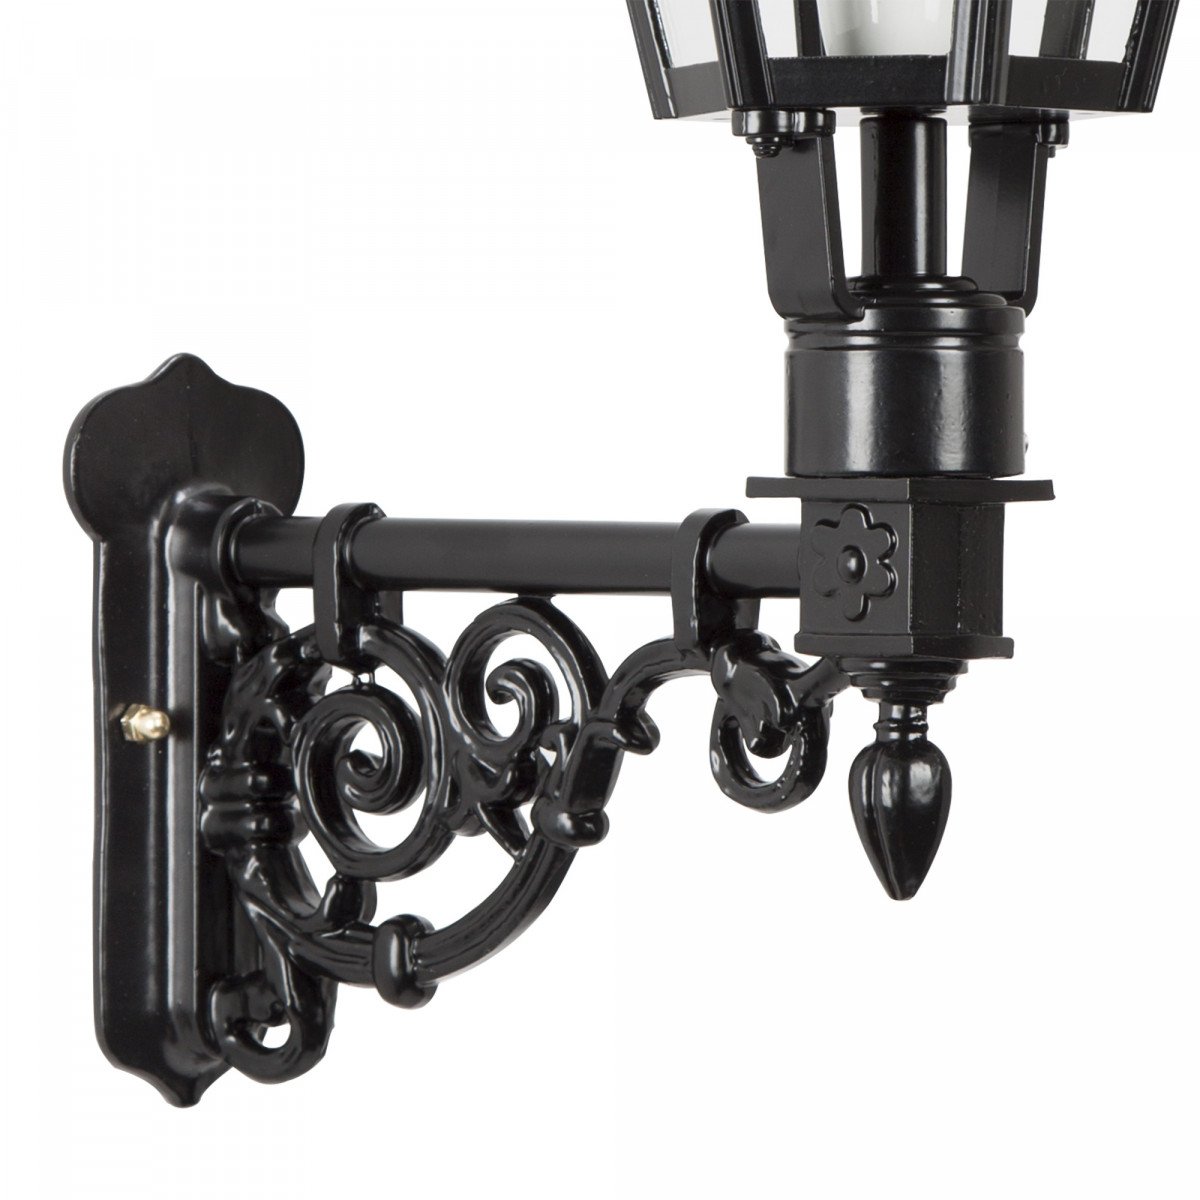 Klassieke buitenlamp Spaarne M van KS Verlichting strakke stijlvol klassiek vormgegeven buitenverlichting voor aan de wand